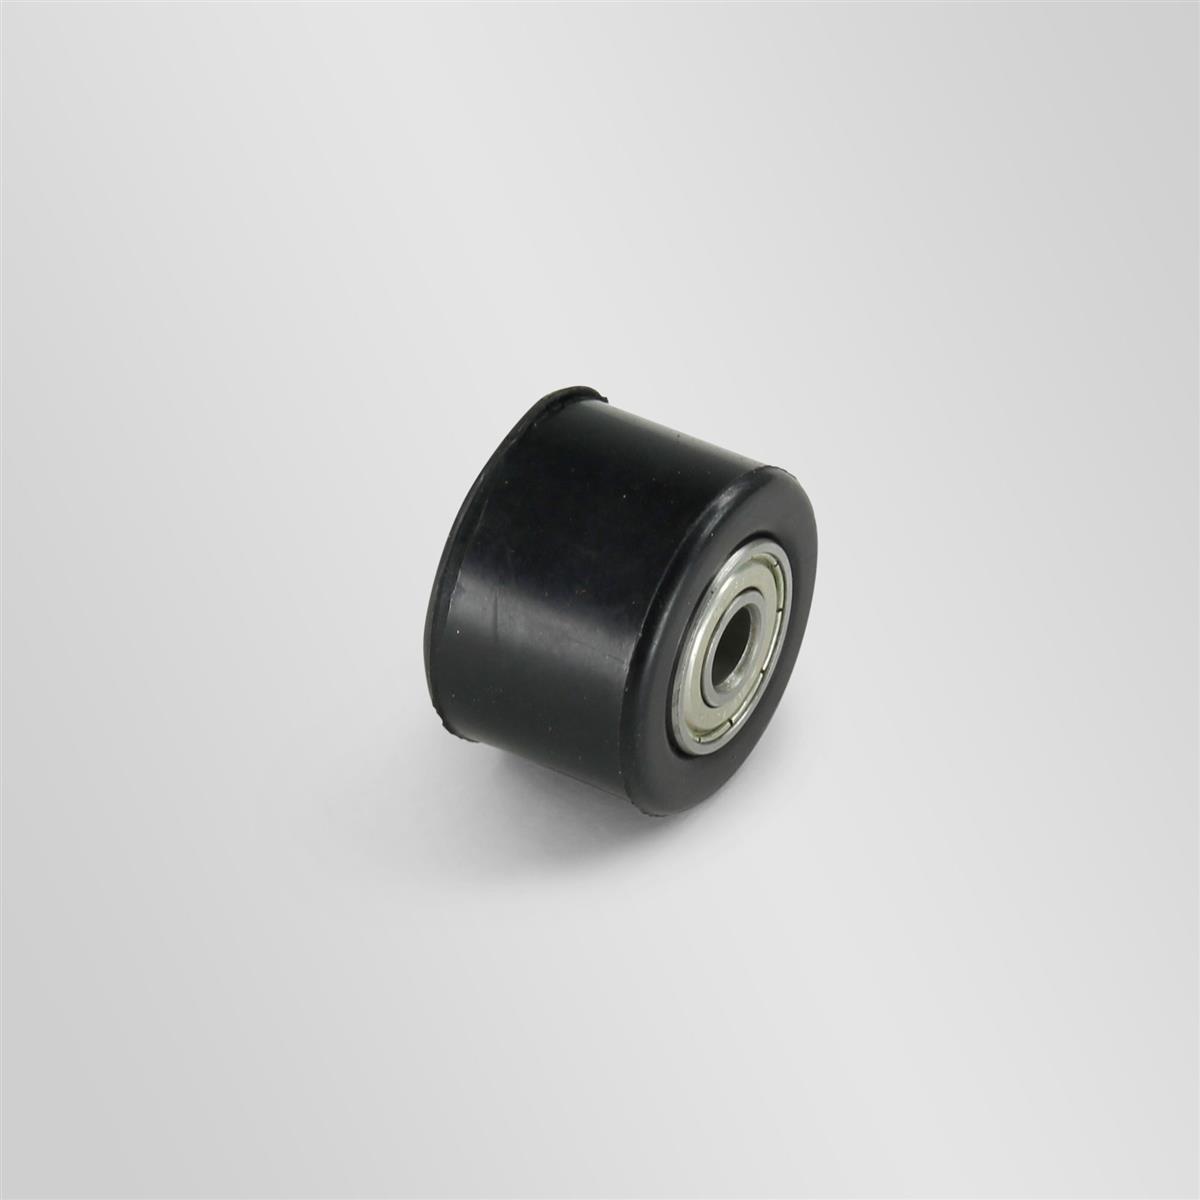 roulette de chaine transmission universel adaptable 32 mm diametre 8 mm  noir pour moto multimarque mecaboite enduro trail